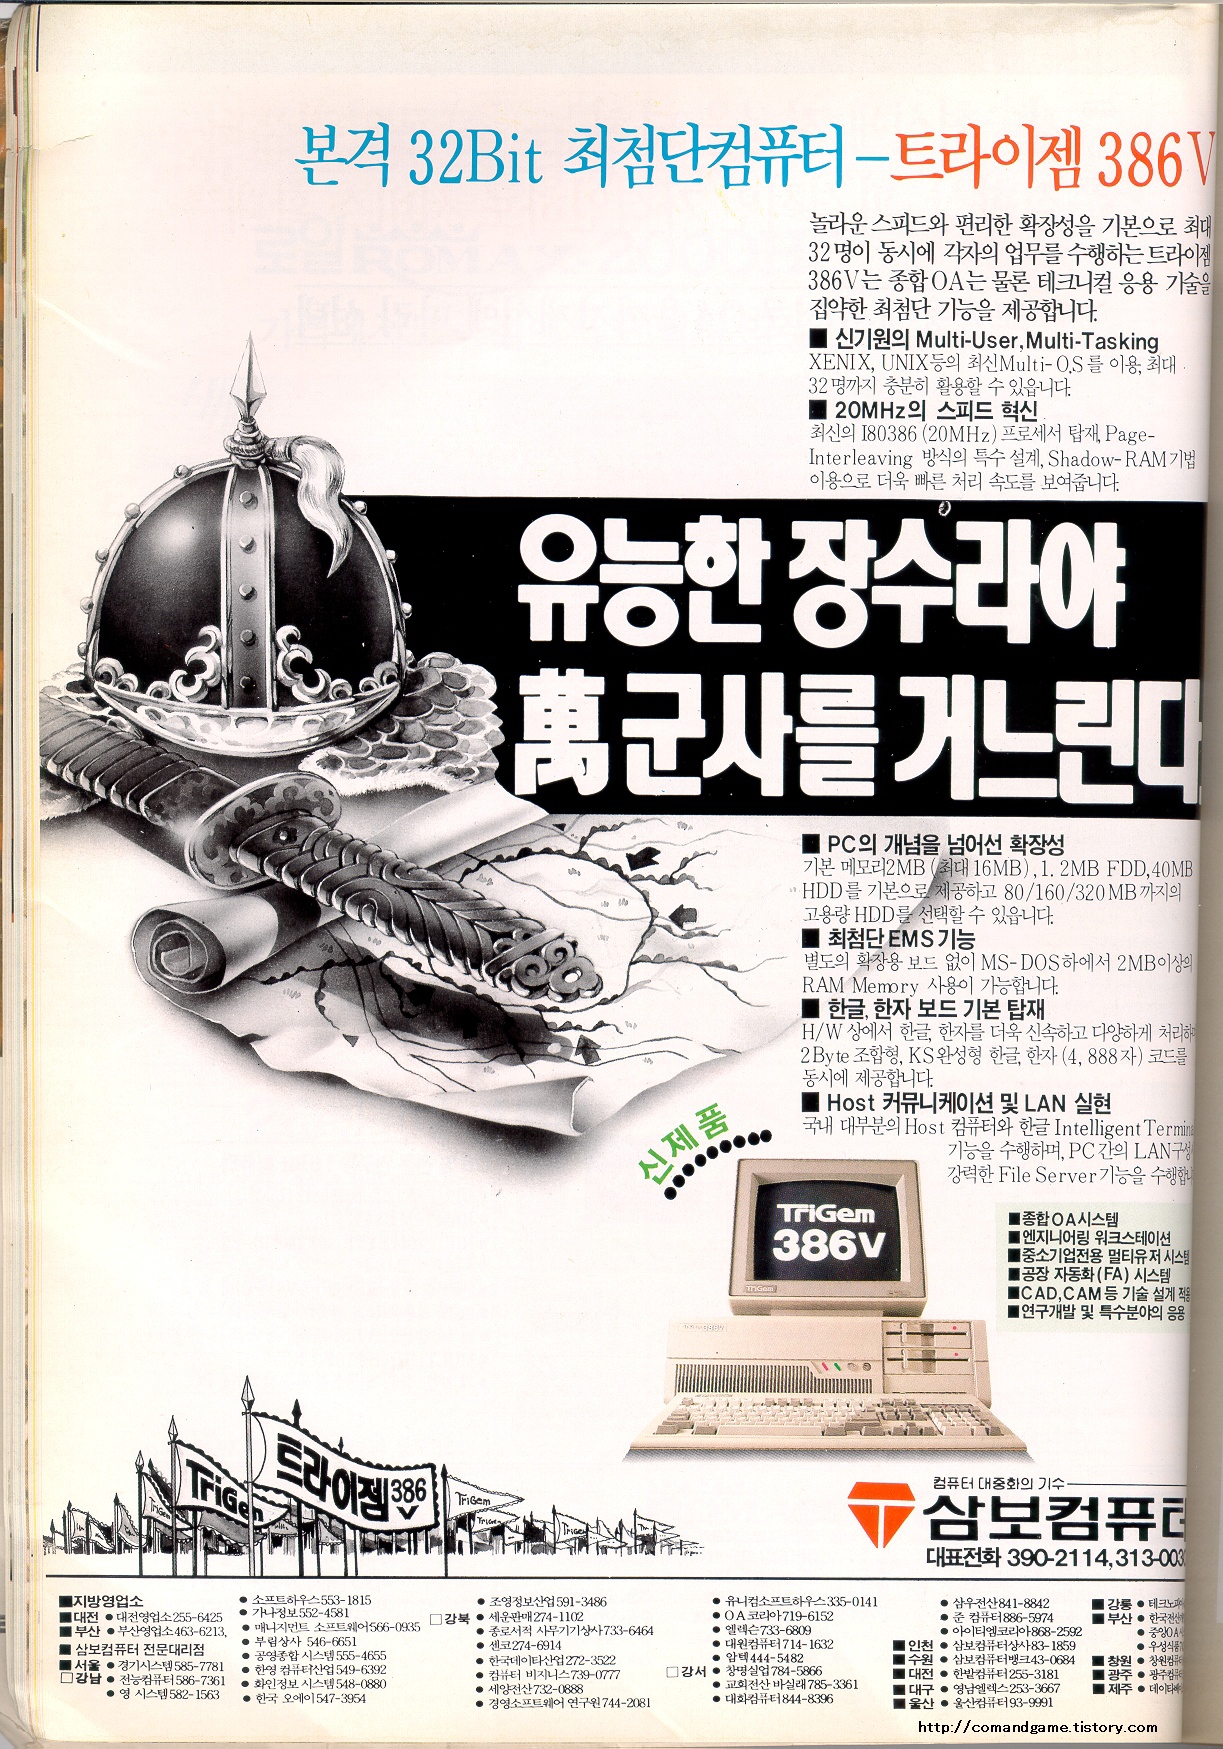 삼보컴퓨터 - 트라이젬386V (TRIGEM 386V) 잡지 광고